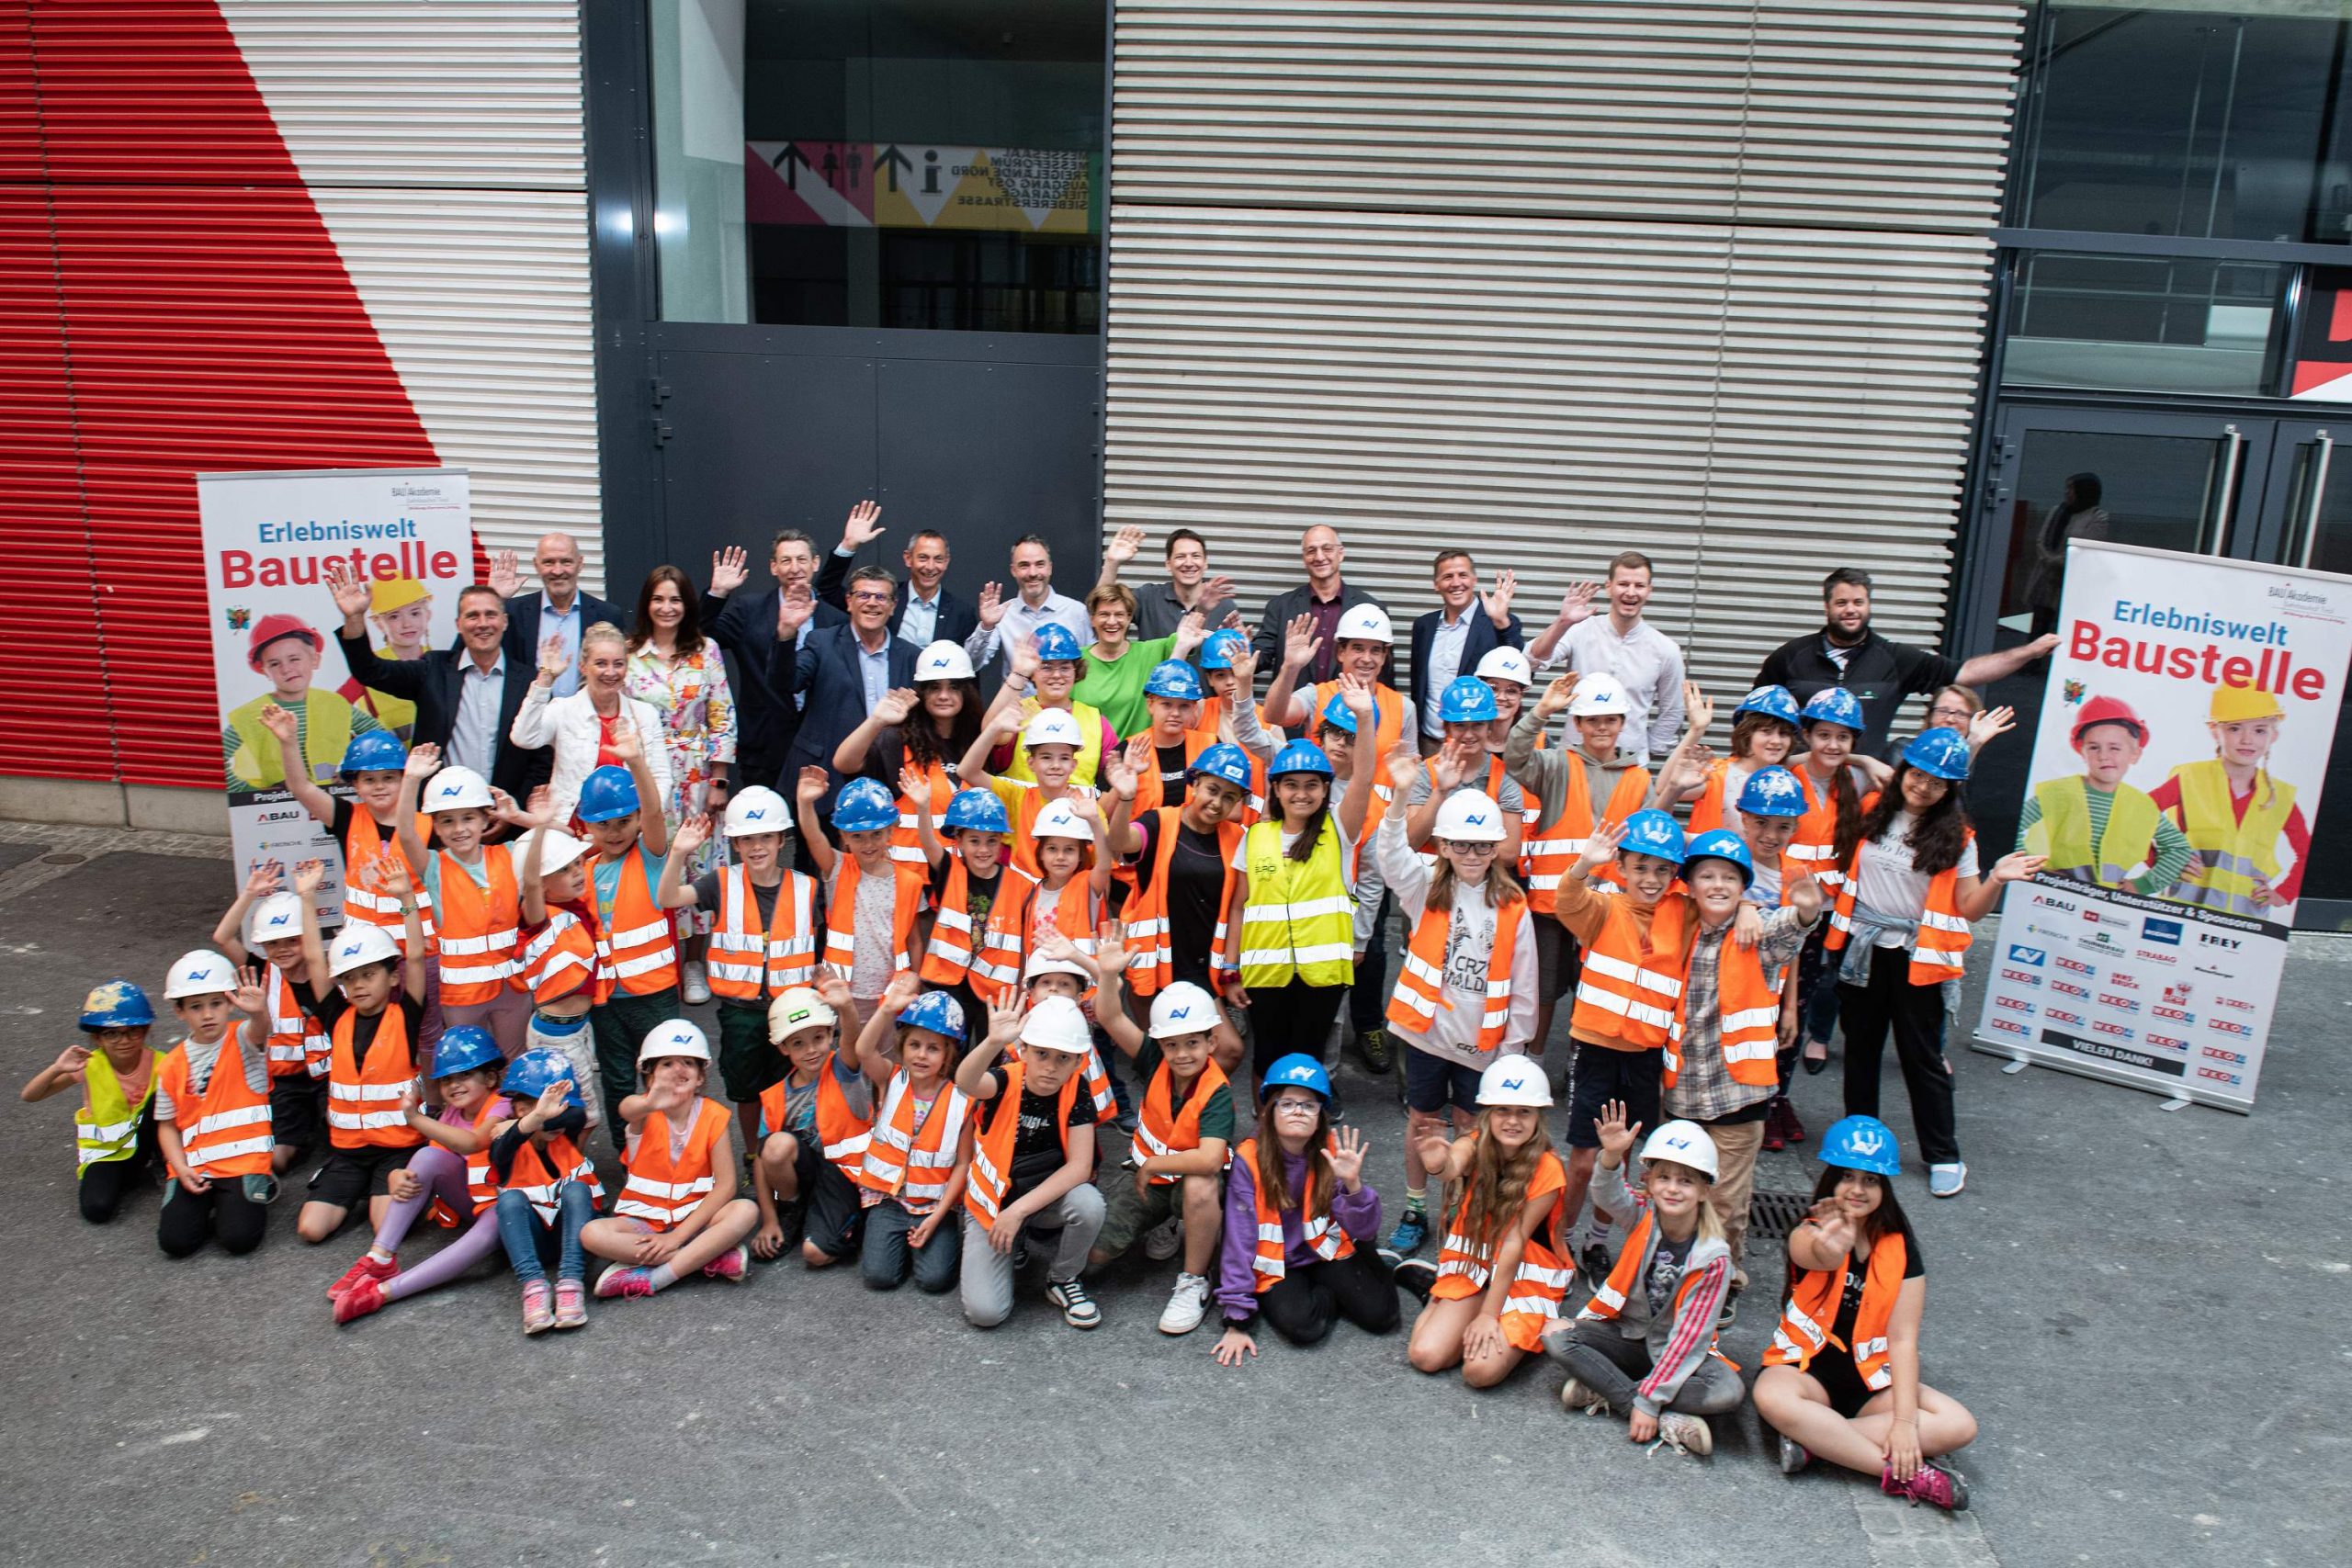 Gruppenfoto mit Kindern und Erwachsenen vor der "Erlebniswelt Baustelle"